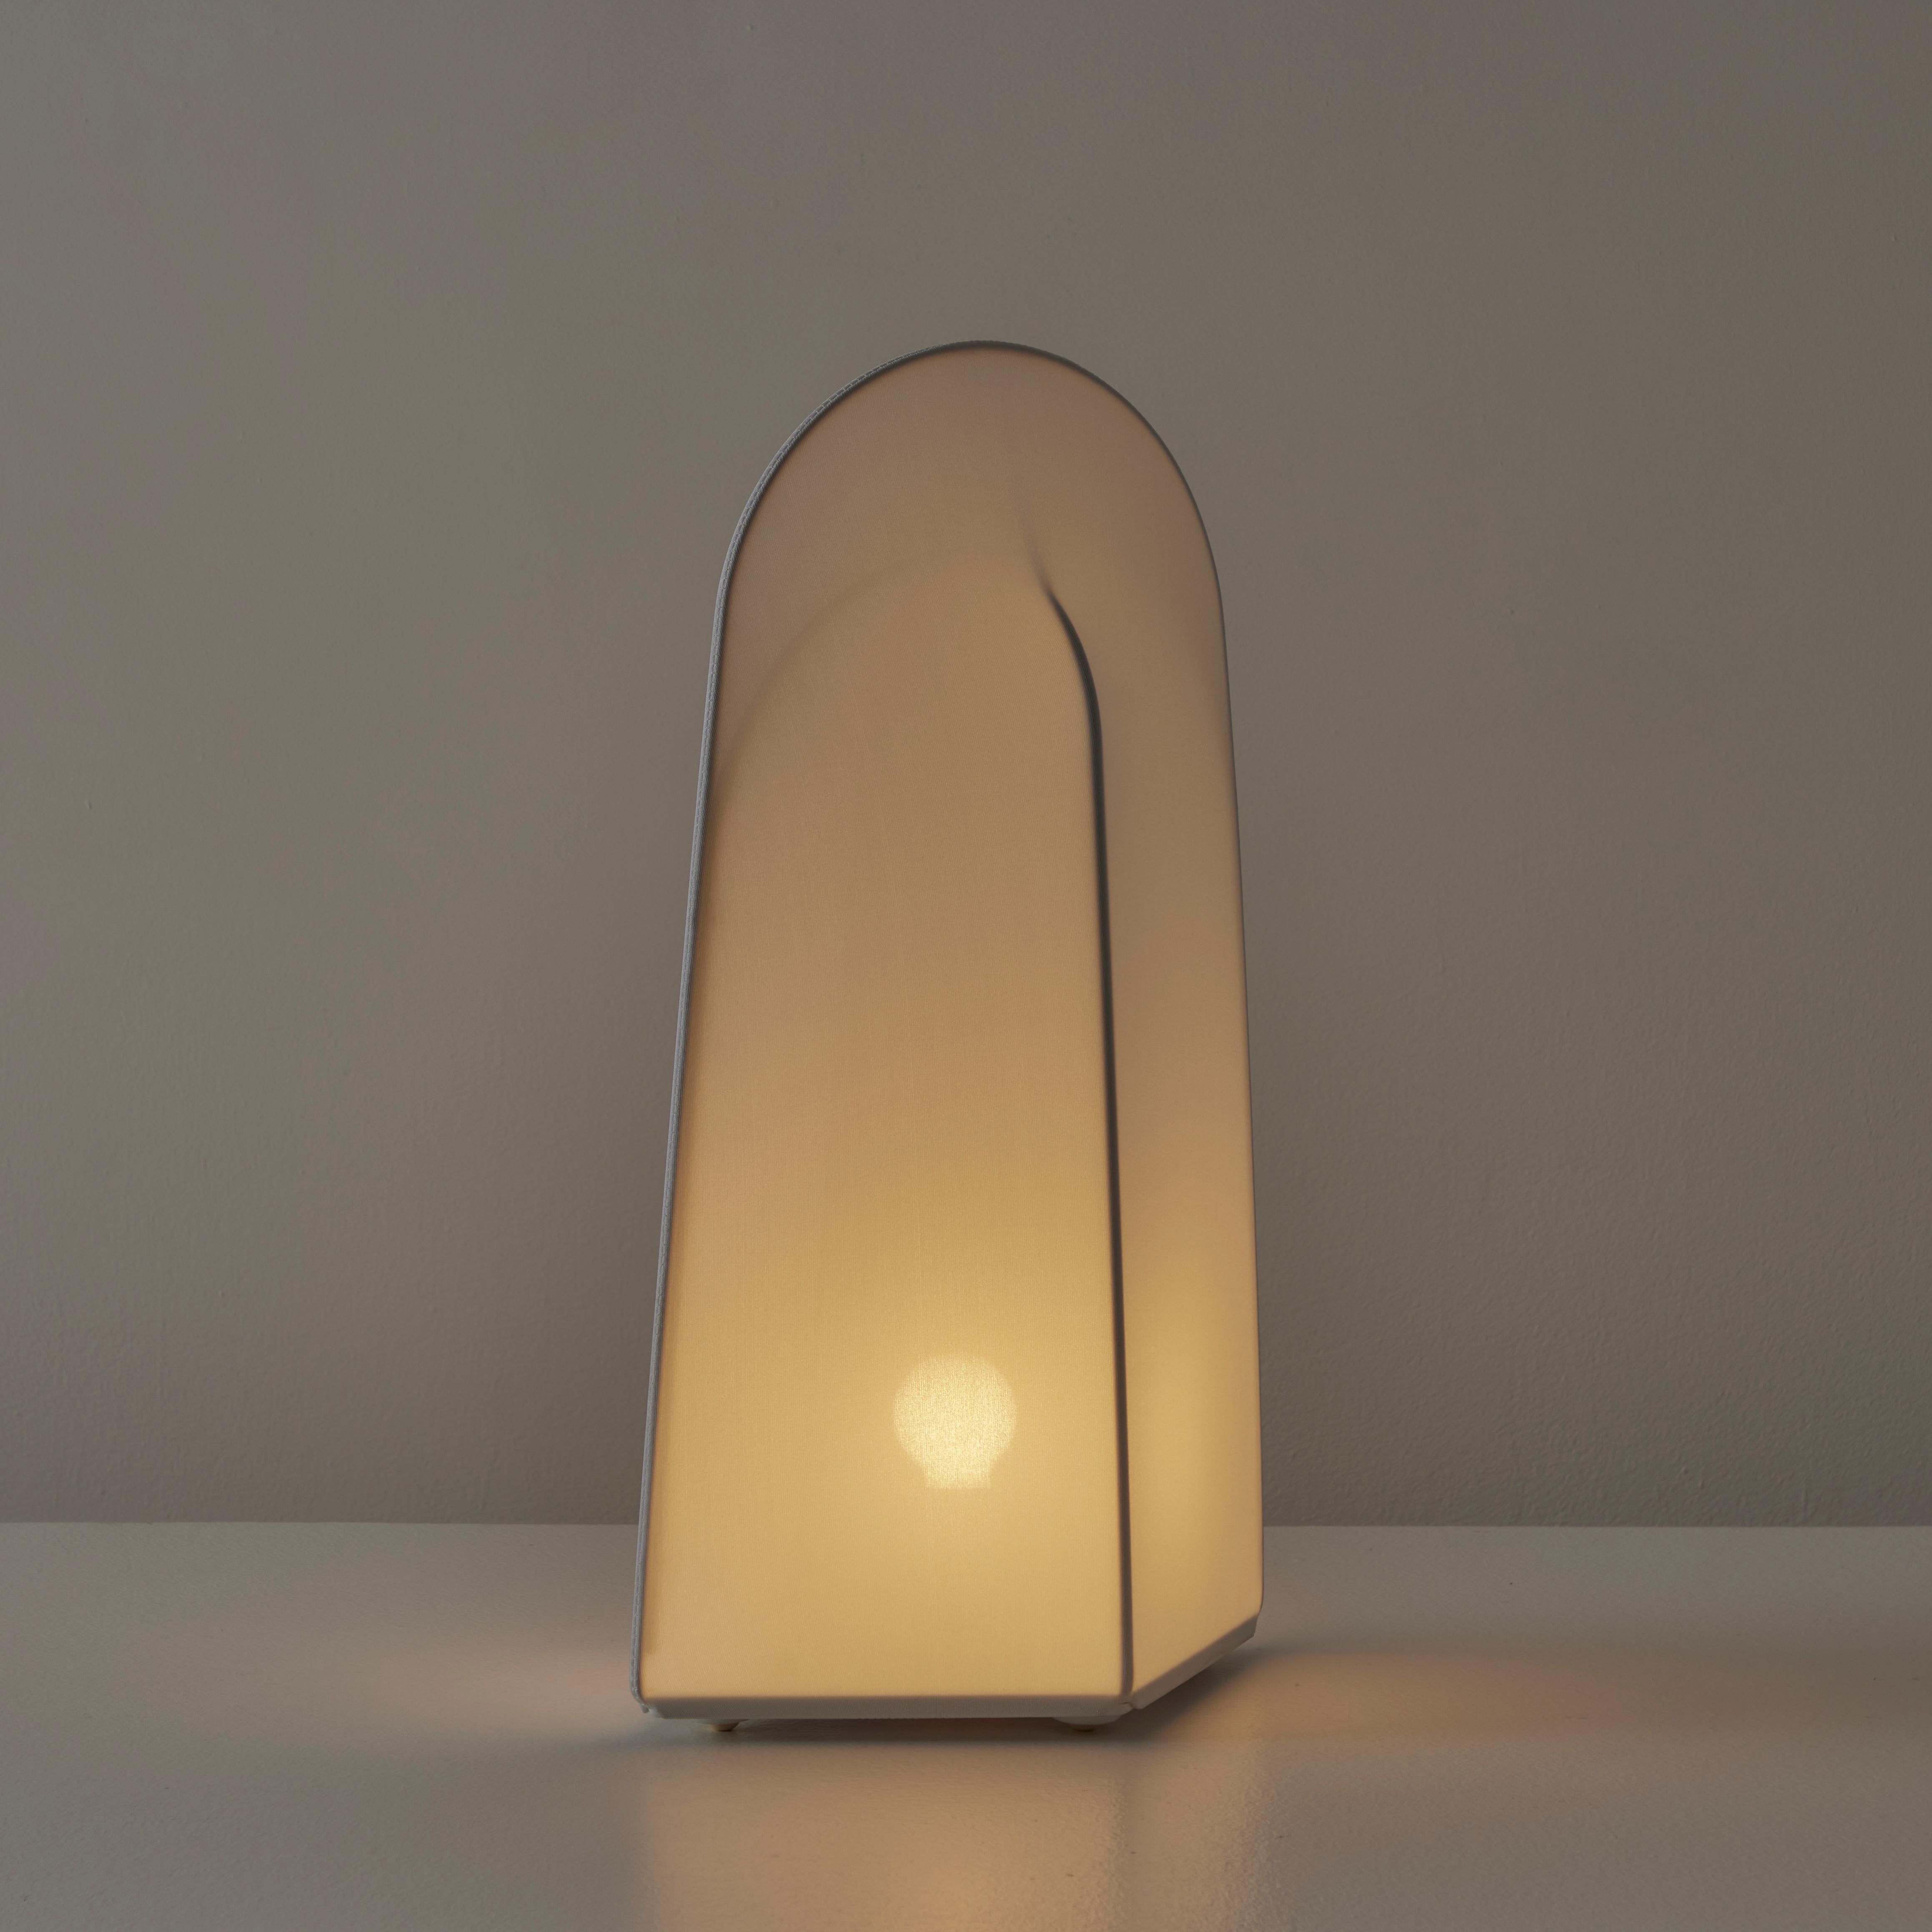 Kazuki 2 lampe à poser ou lampadaire par Kazuhide Takahama pour Sirrah. Conçu et fabriqué en Italie, vers les années 1970. Stock mort de Sirrah. Lampes en forme de silo avec un style arqué de faible largeur. Les lampes sont très simplistes,